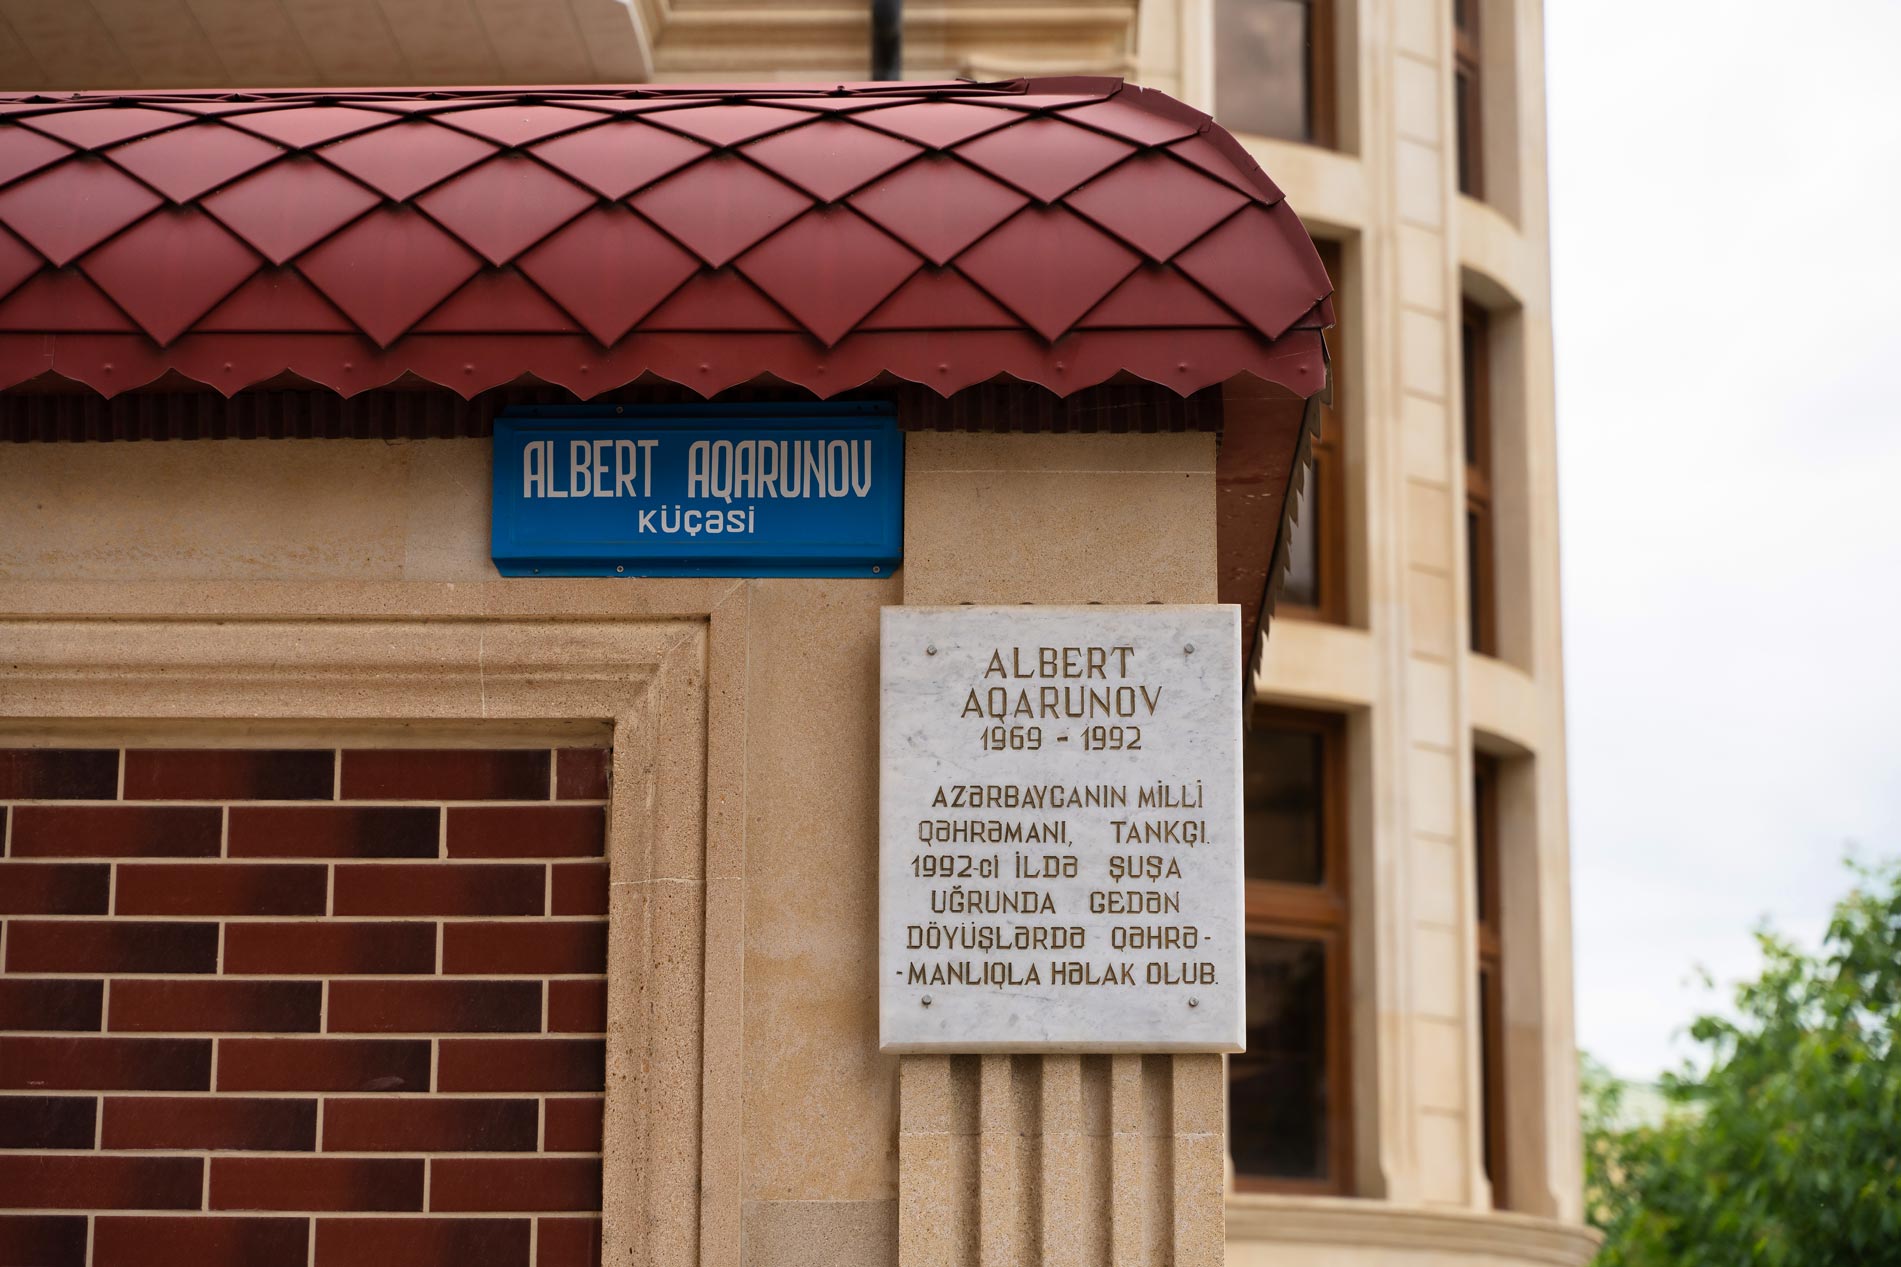 Memorial Board of Albert Agarunov